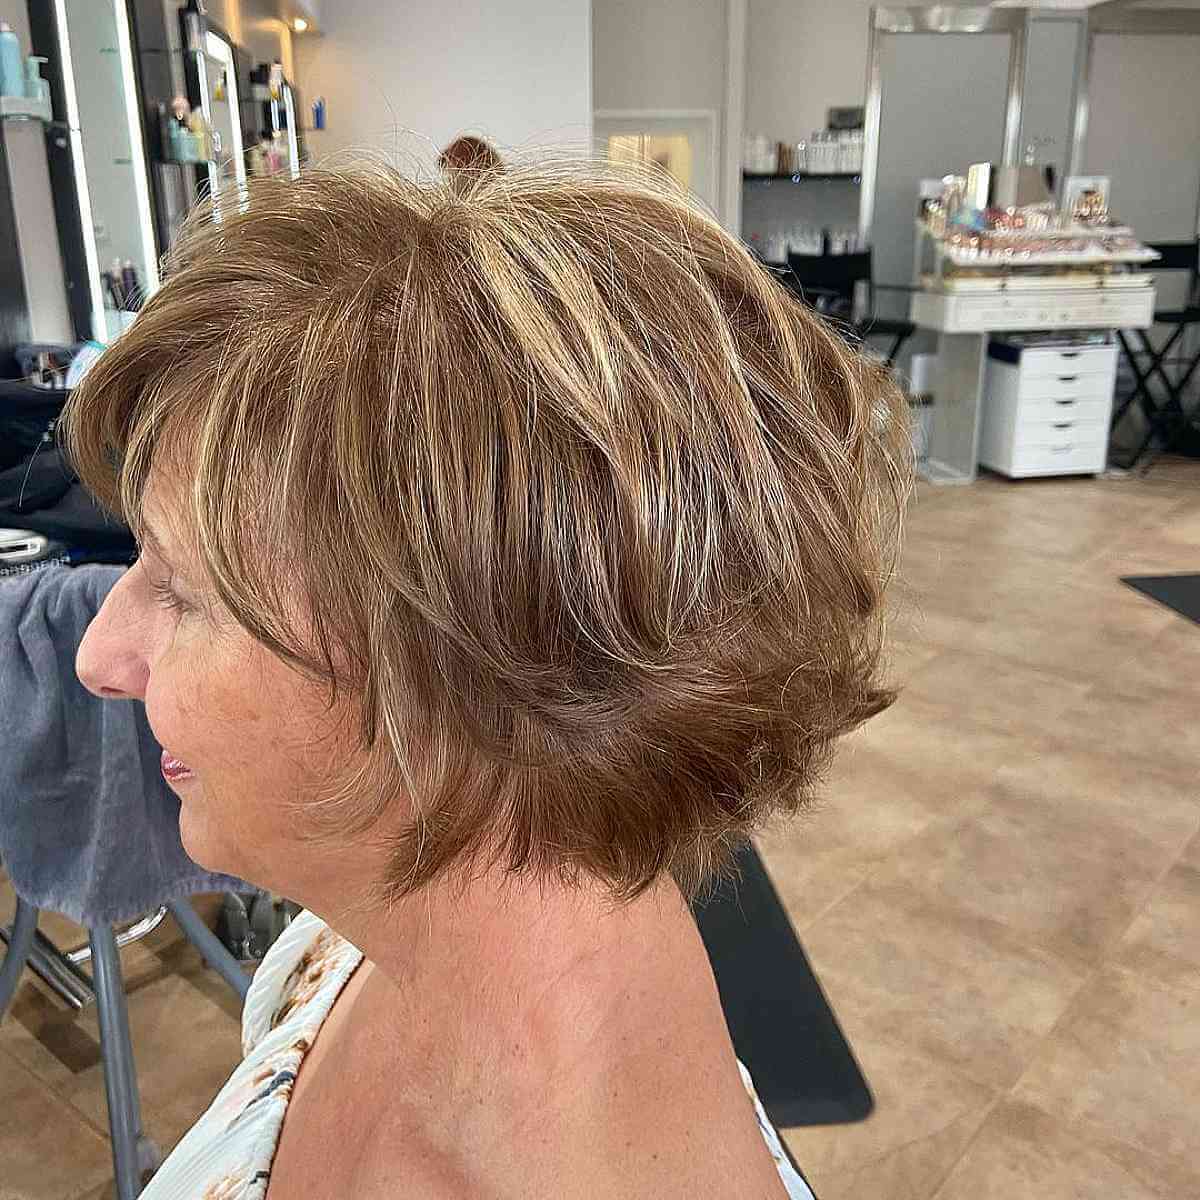 Short Light Golden Brown Hair for Women Over 60